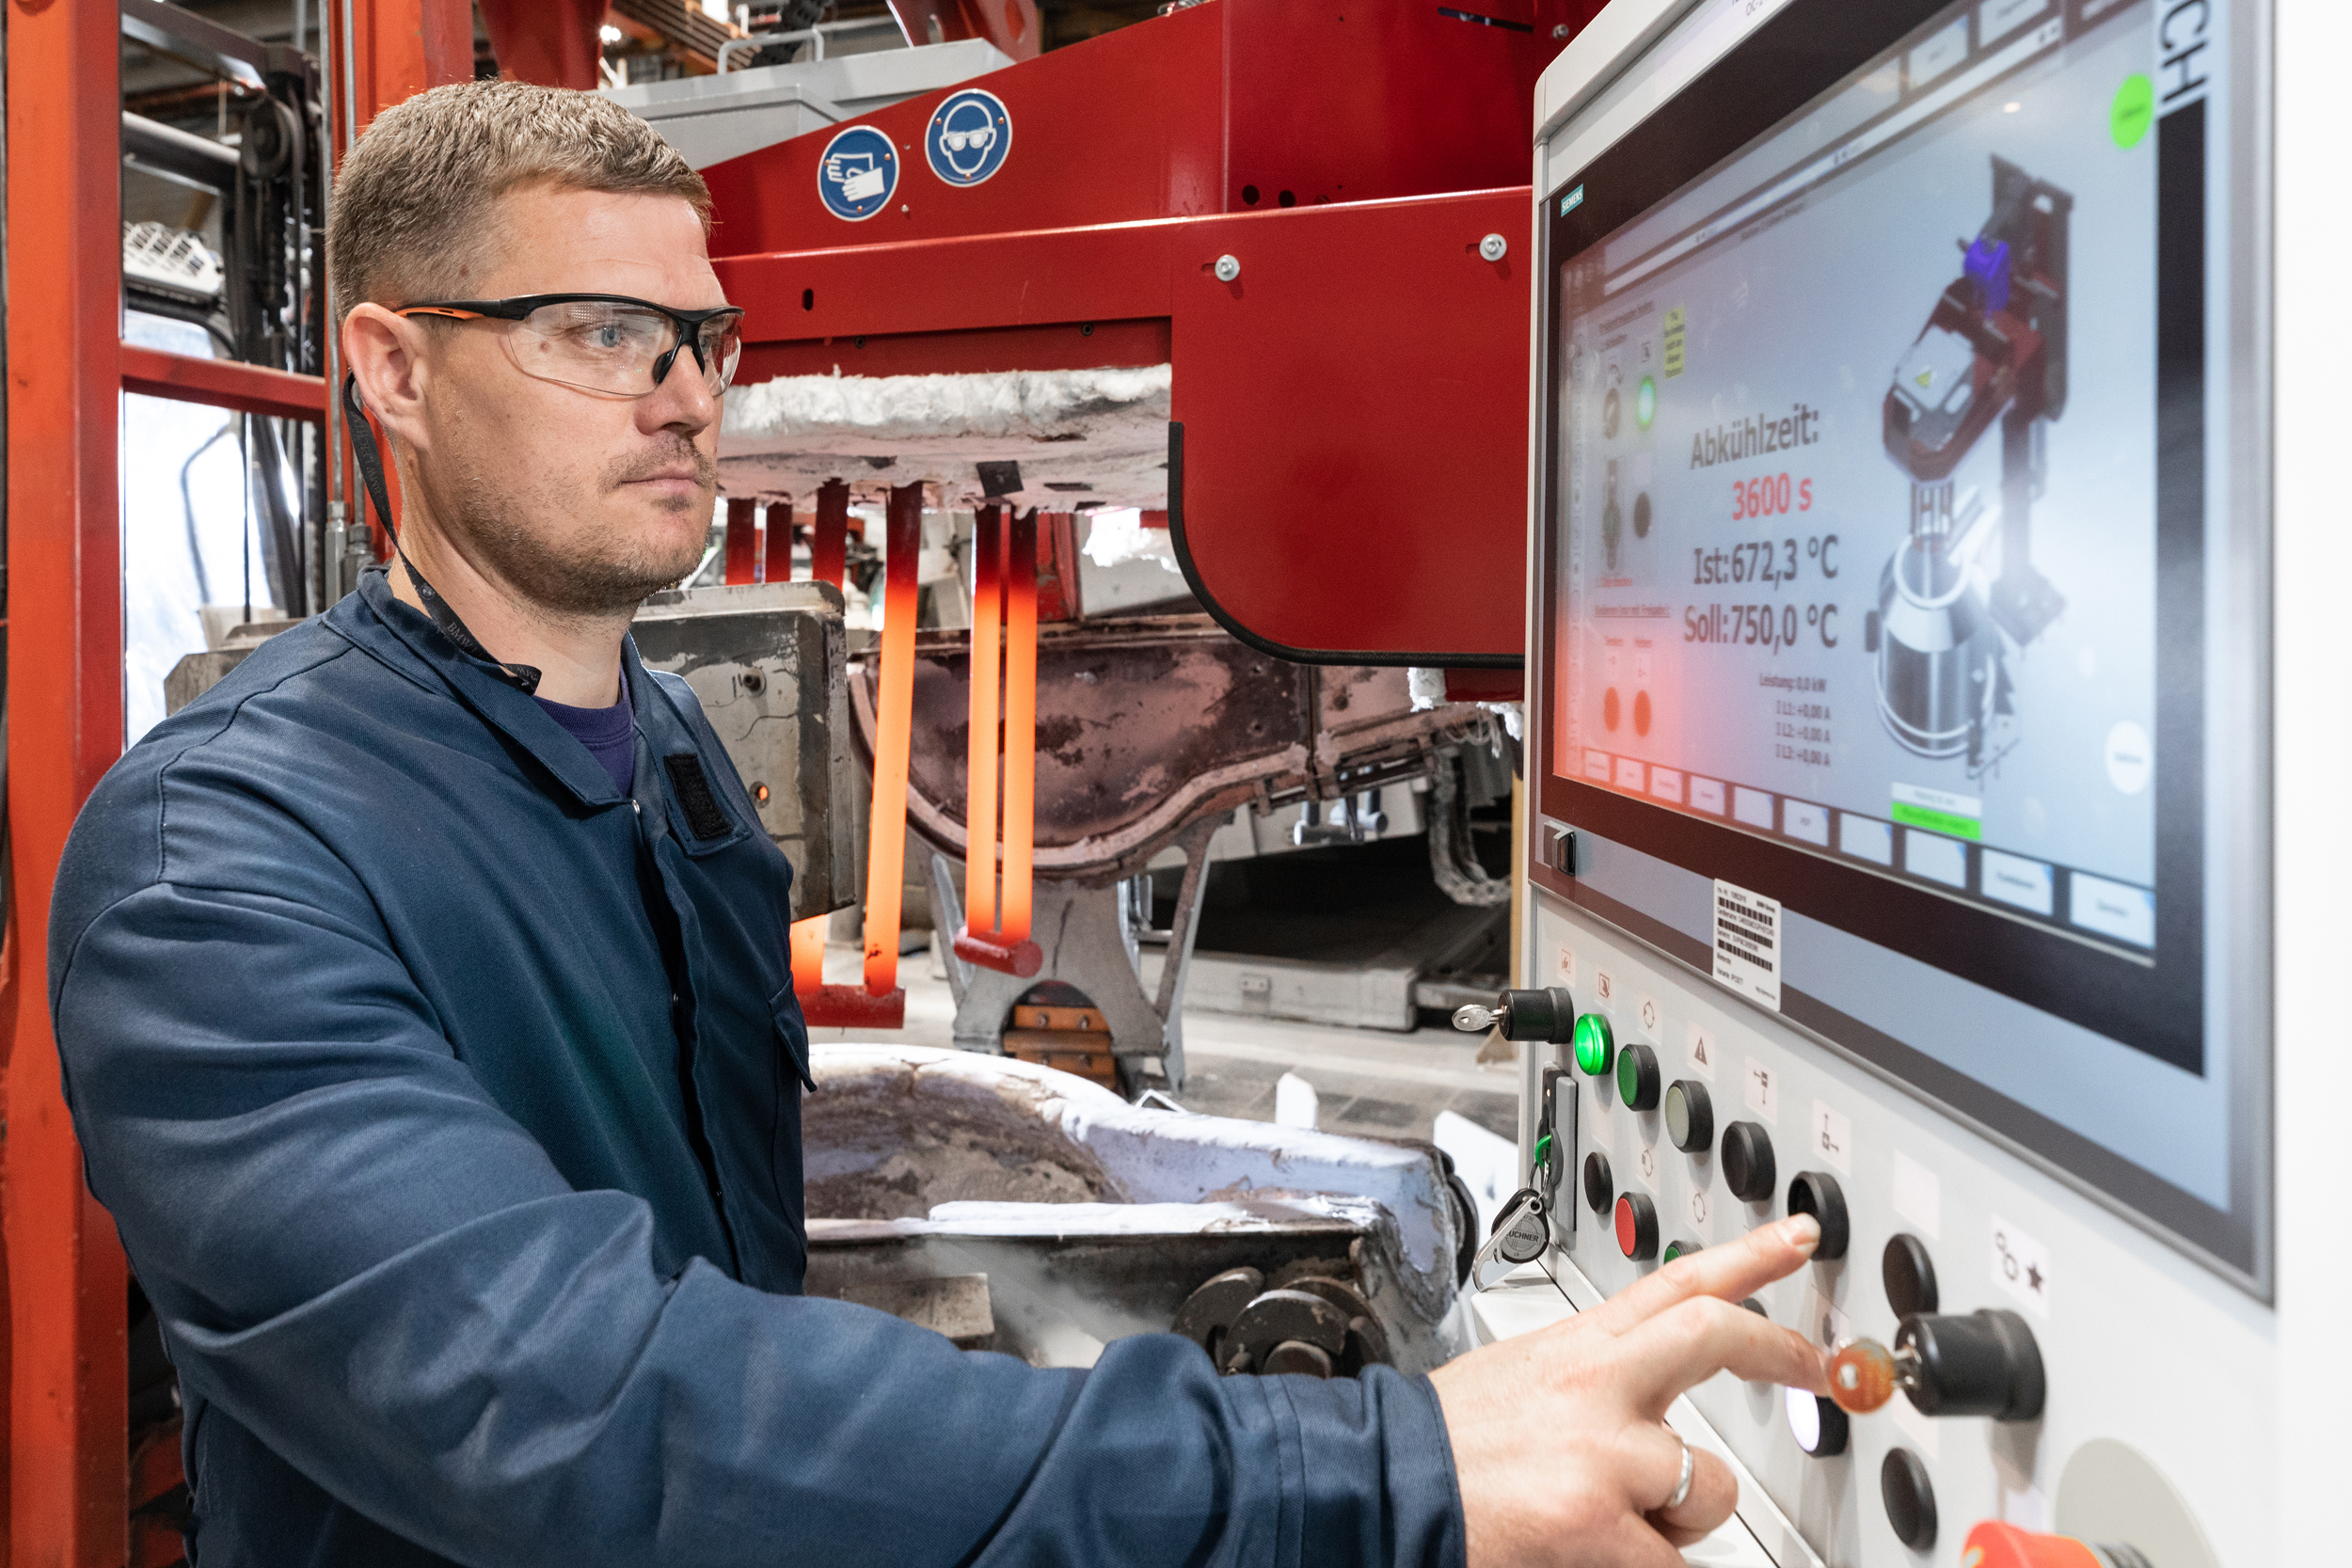 Strom statt Gas: Leichtmetallgießerei des BMW Group Werks Landshut setzt auf ressourcenschonende Elektroheizstationen für Aluminiumschmelze